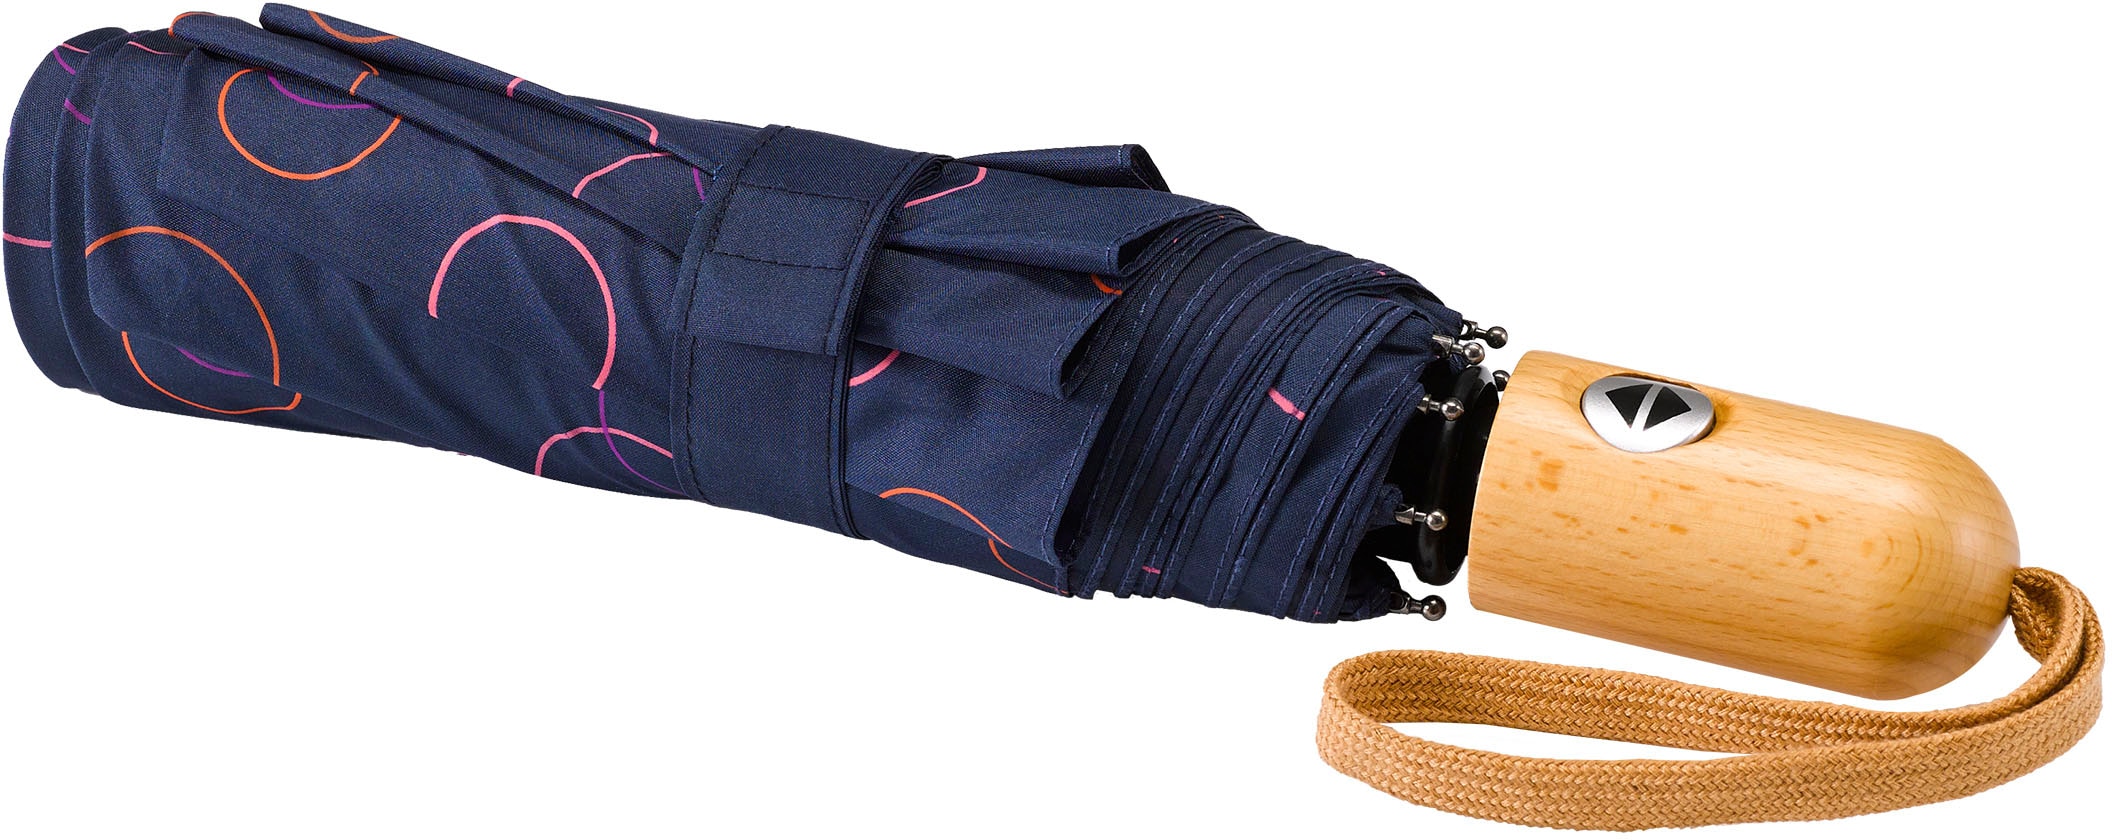 »Umwelt-Taschenschirm, kaufen Taschenregenschirm Kreise EuroSCHIRM® marine, pink«